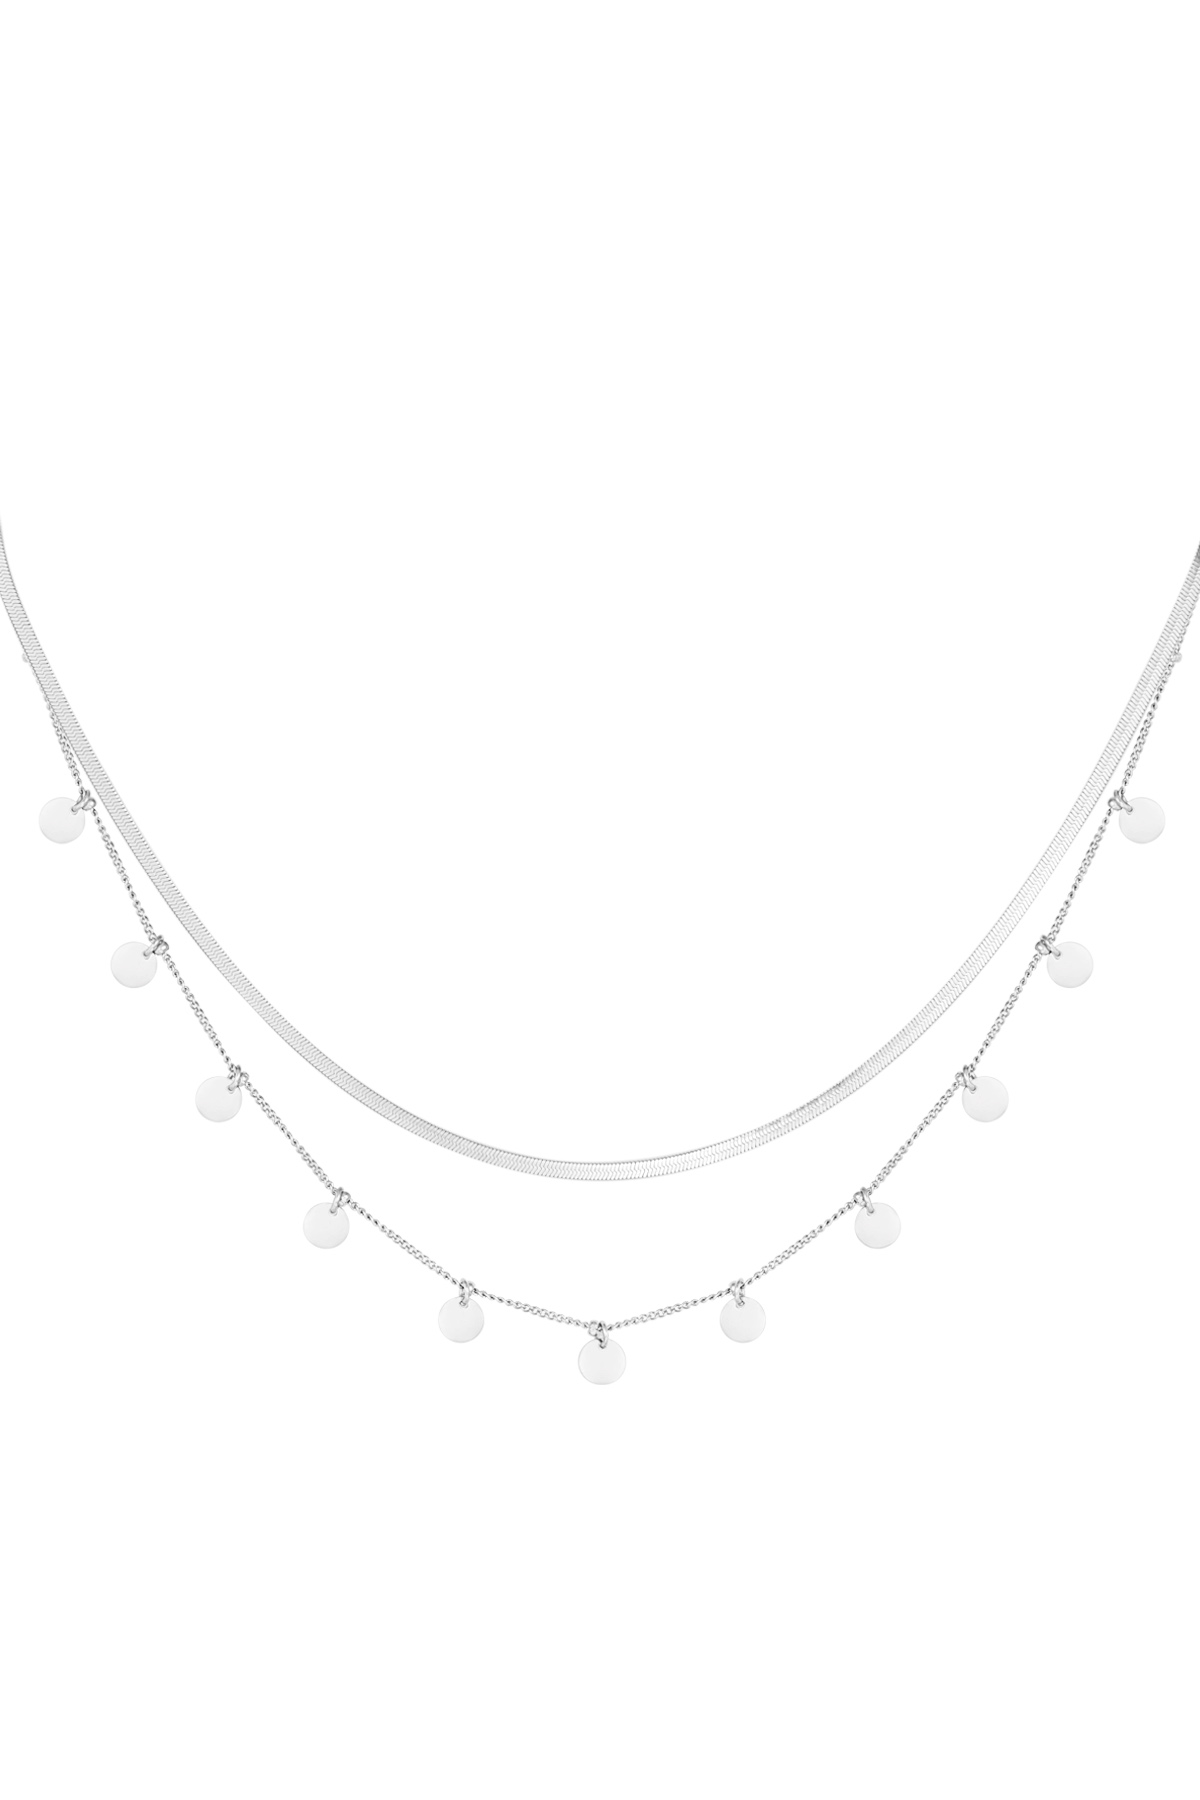 Halskette doppellagige Kreise – Silber